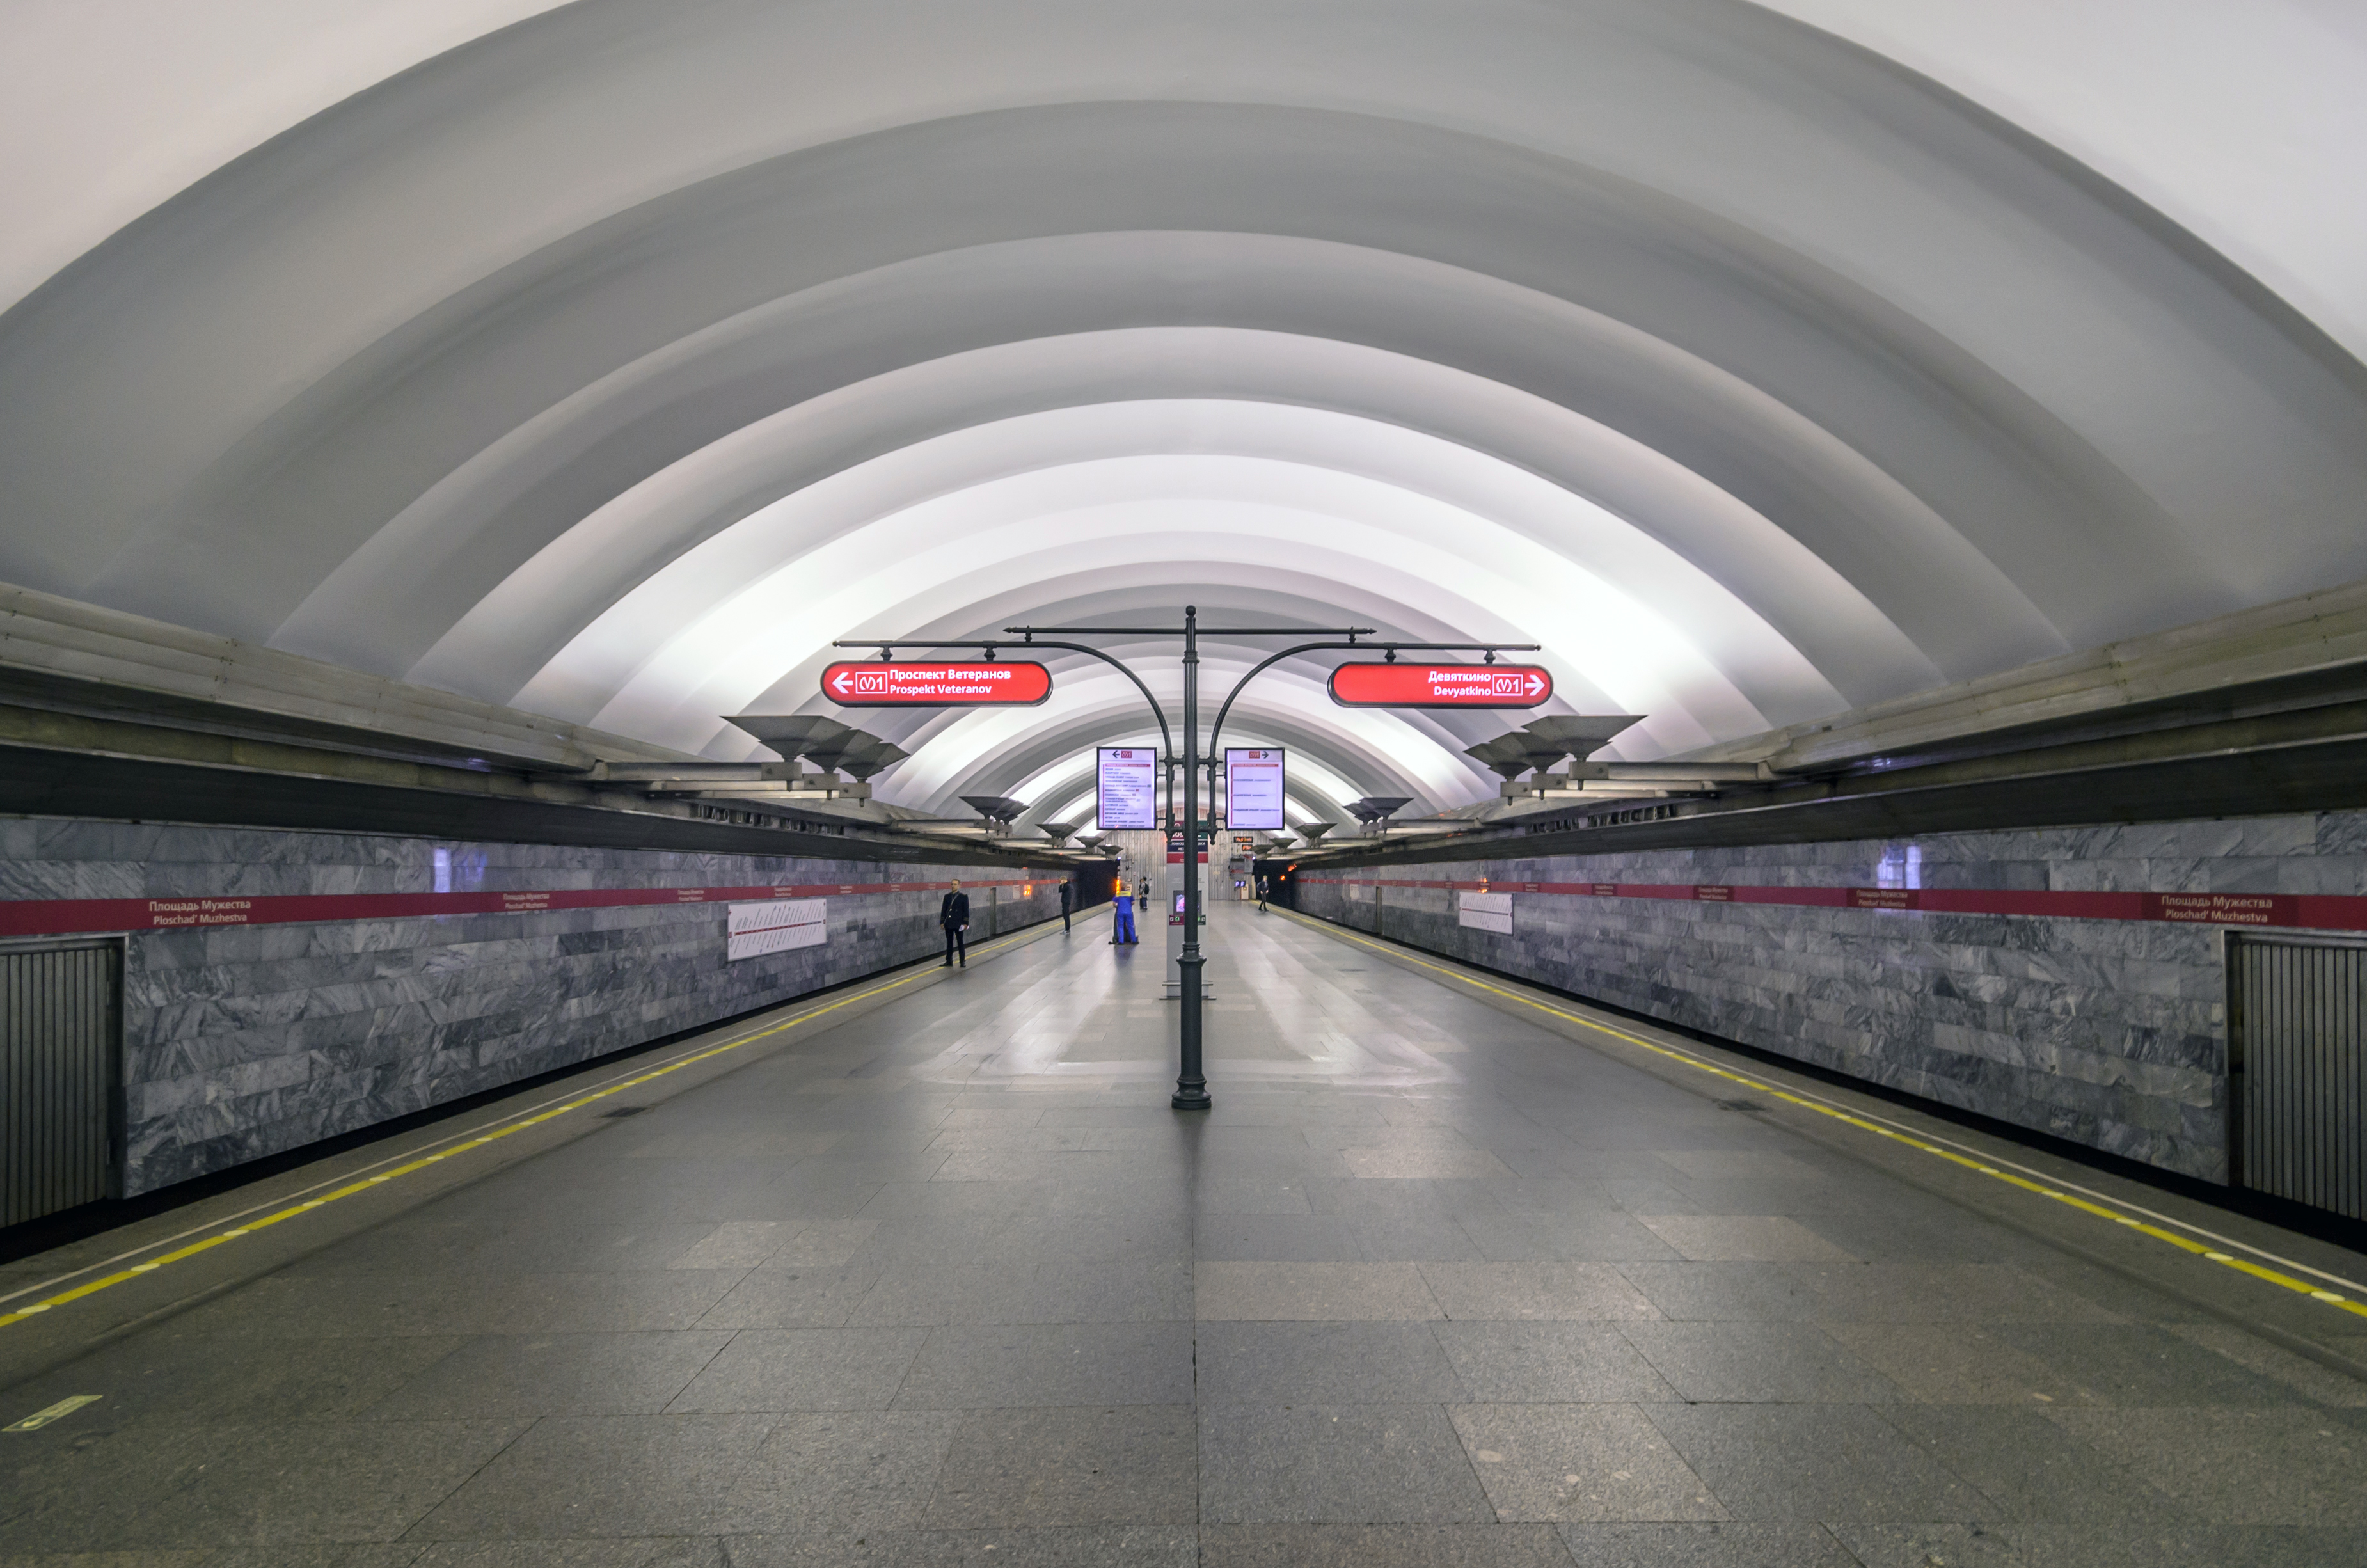 Ploshchad Muzhestva station in 2014. Photograph by Alex ‘Florstein’ Fedorov, CC BY-SA 4.0.